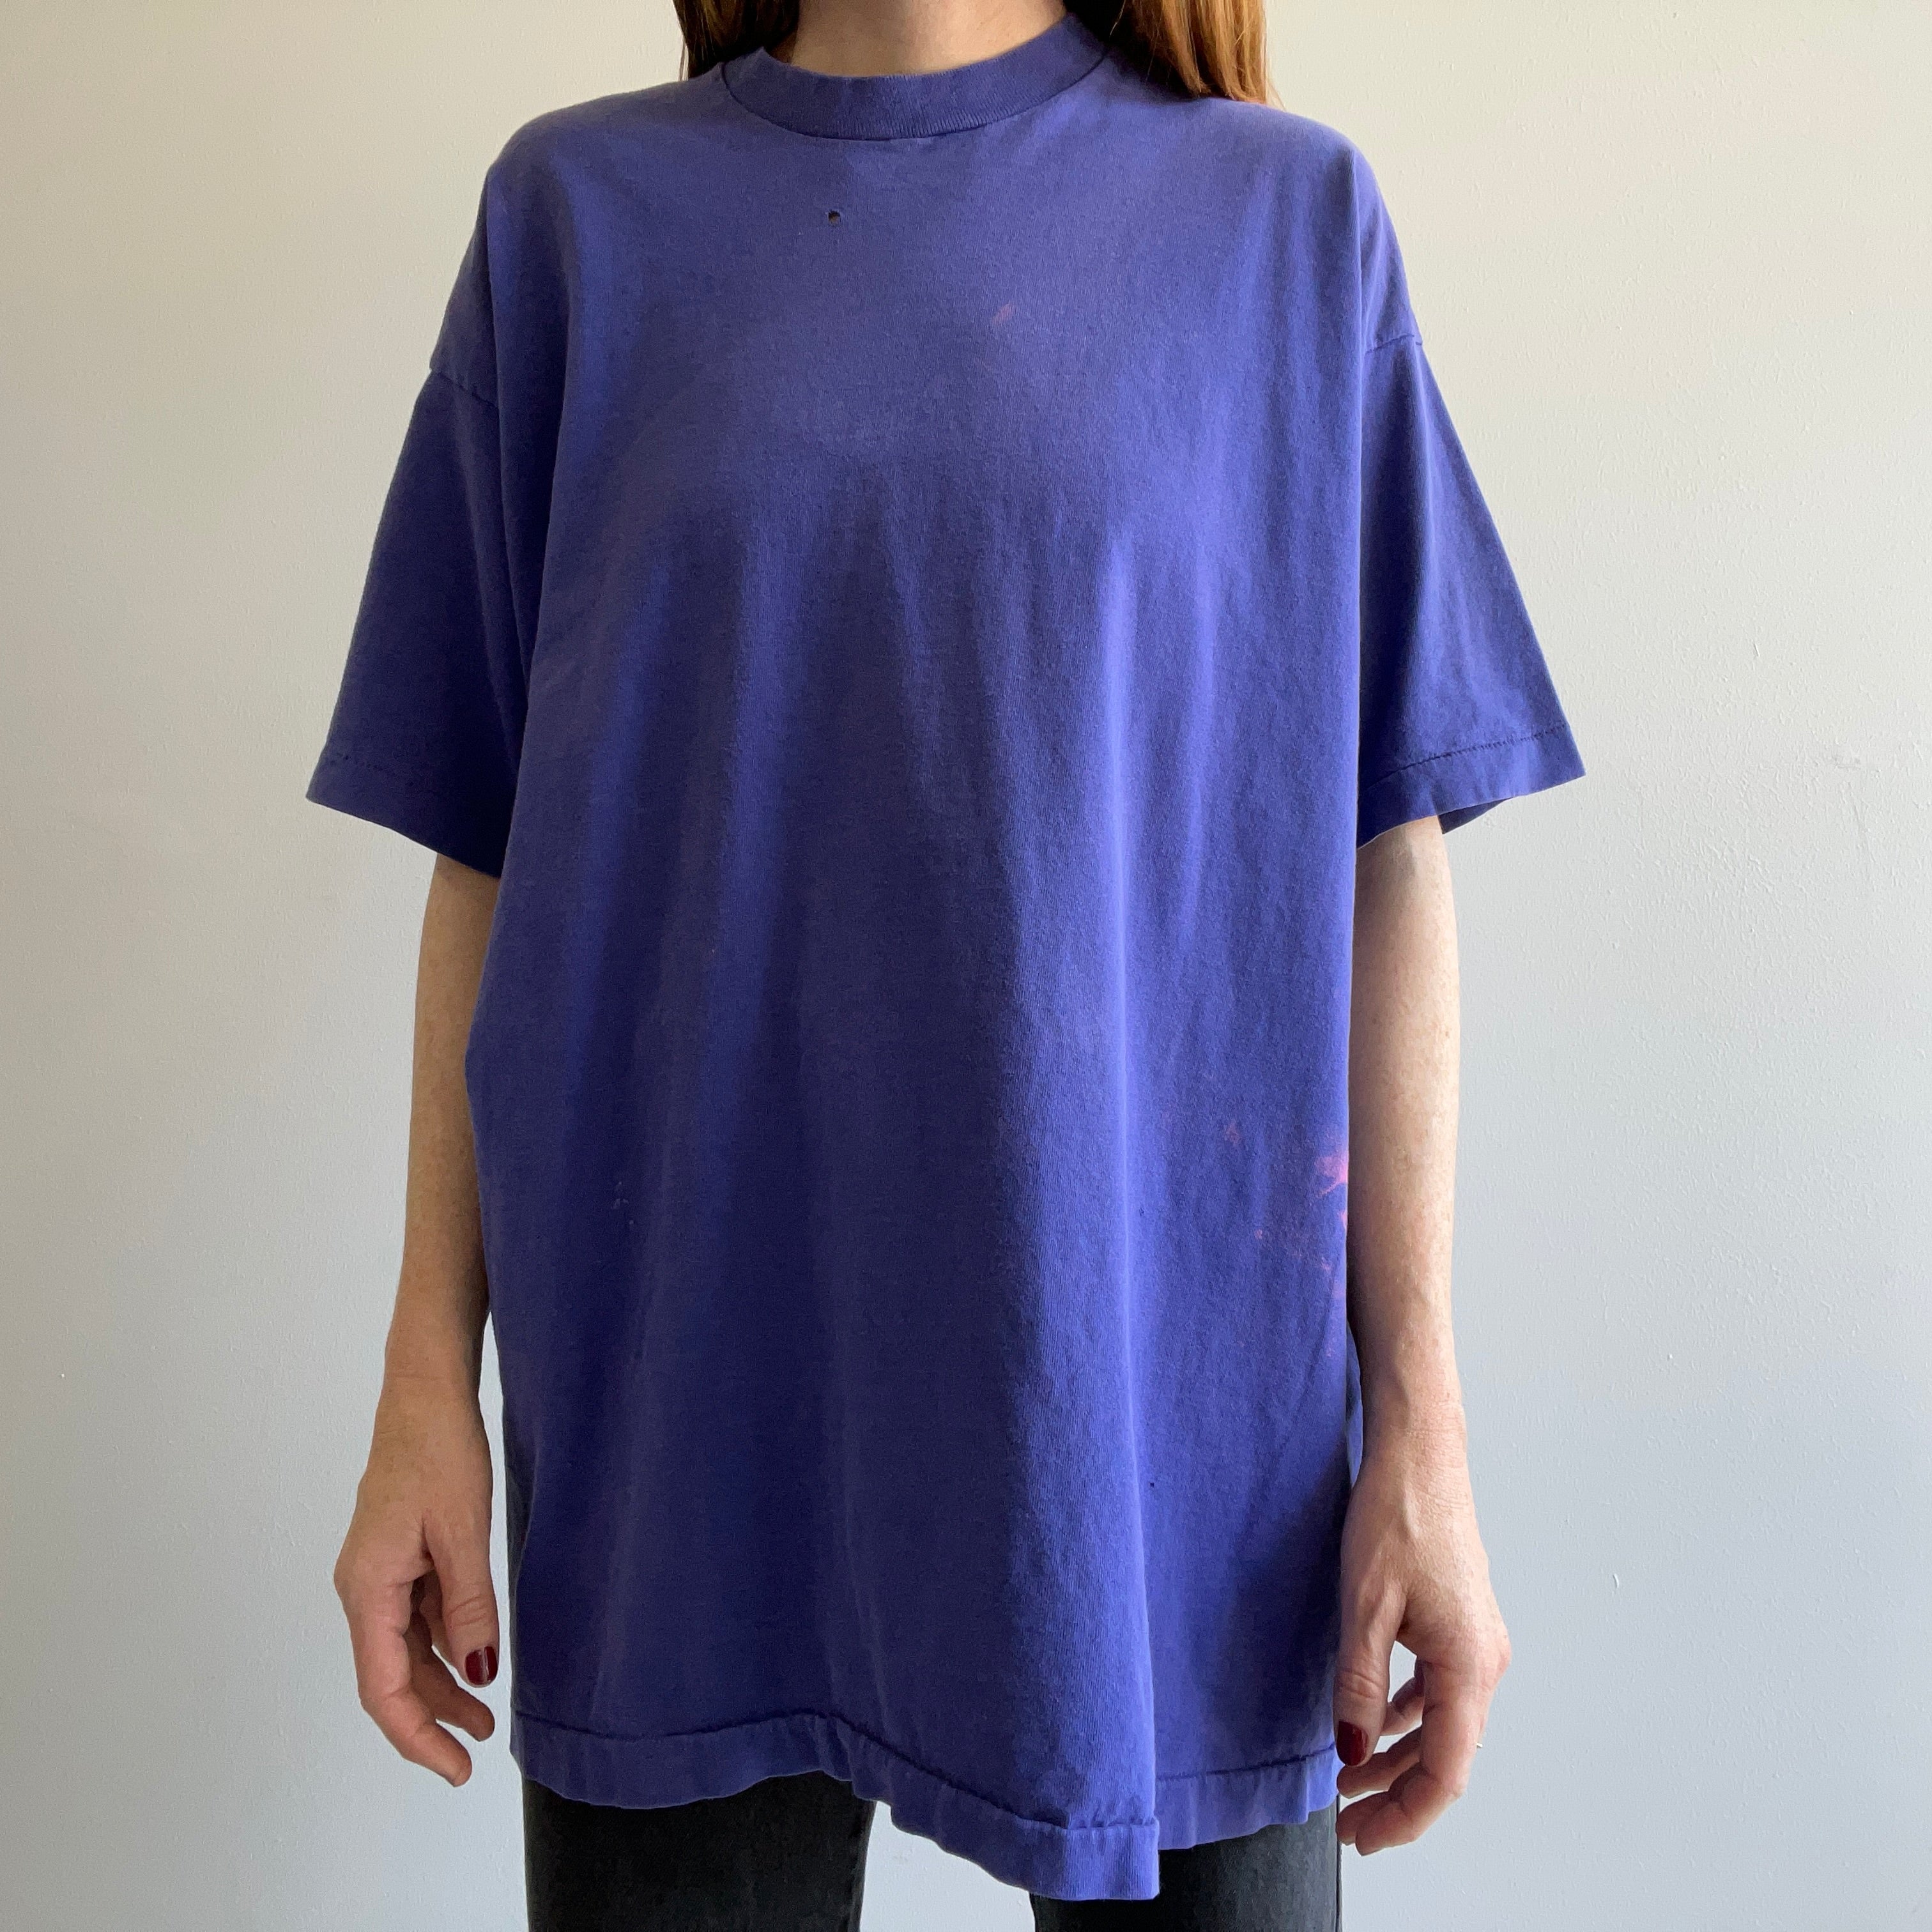 1980s XXL Blank Purple T-Shirt by FOTL